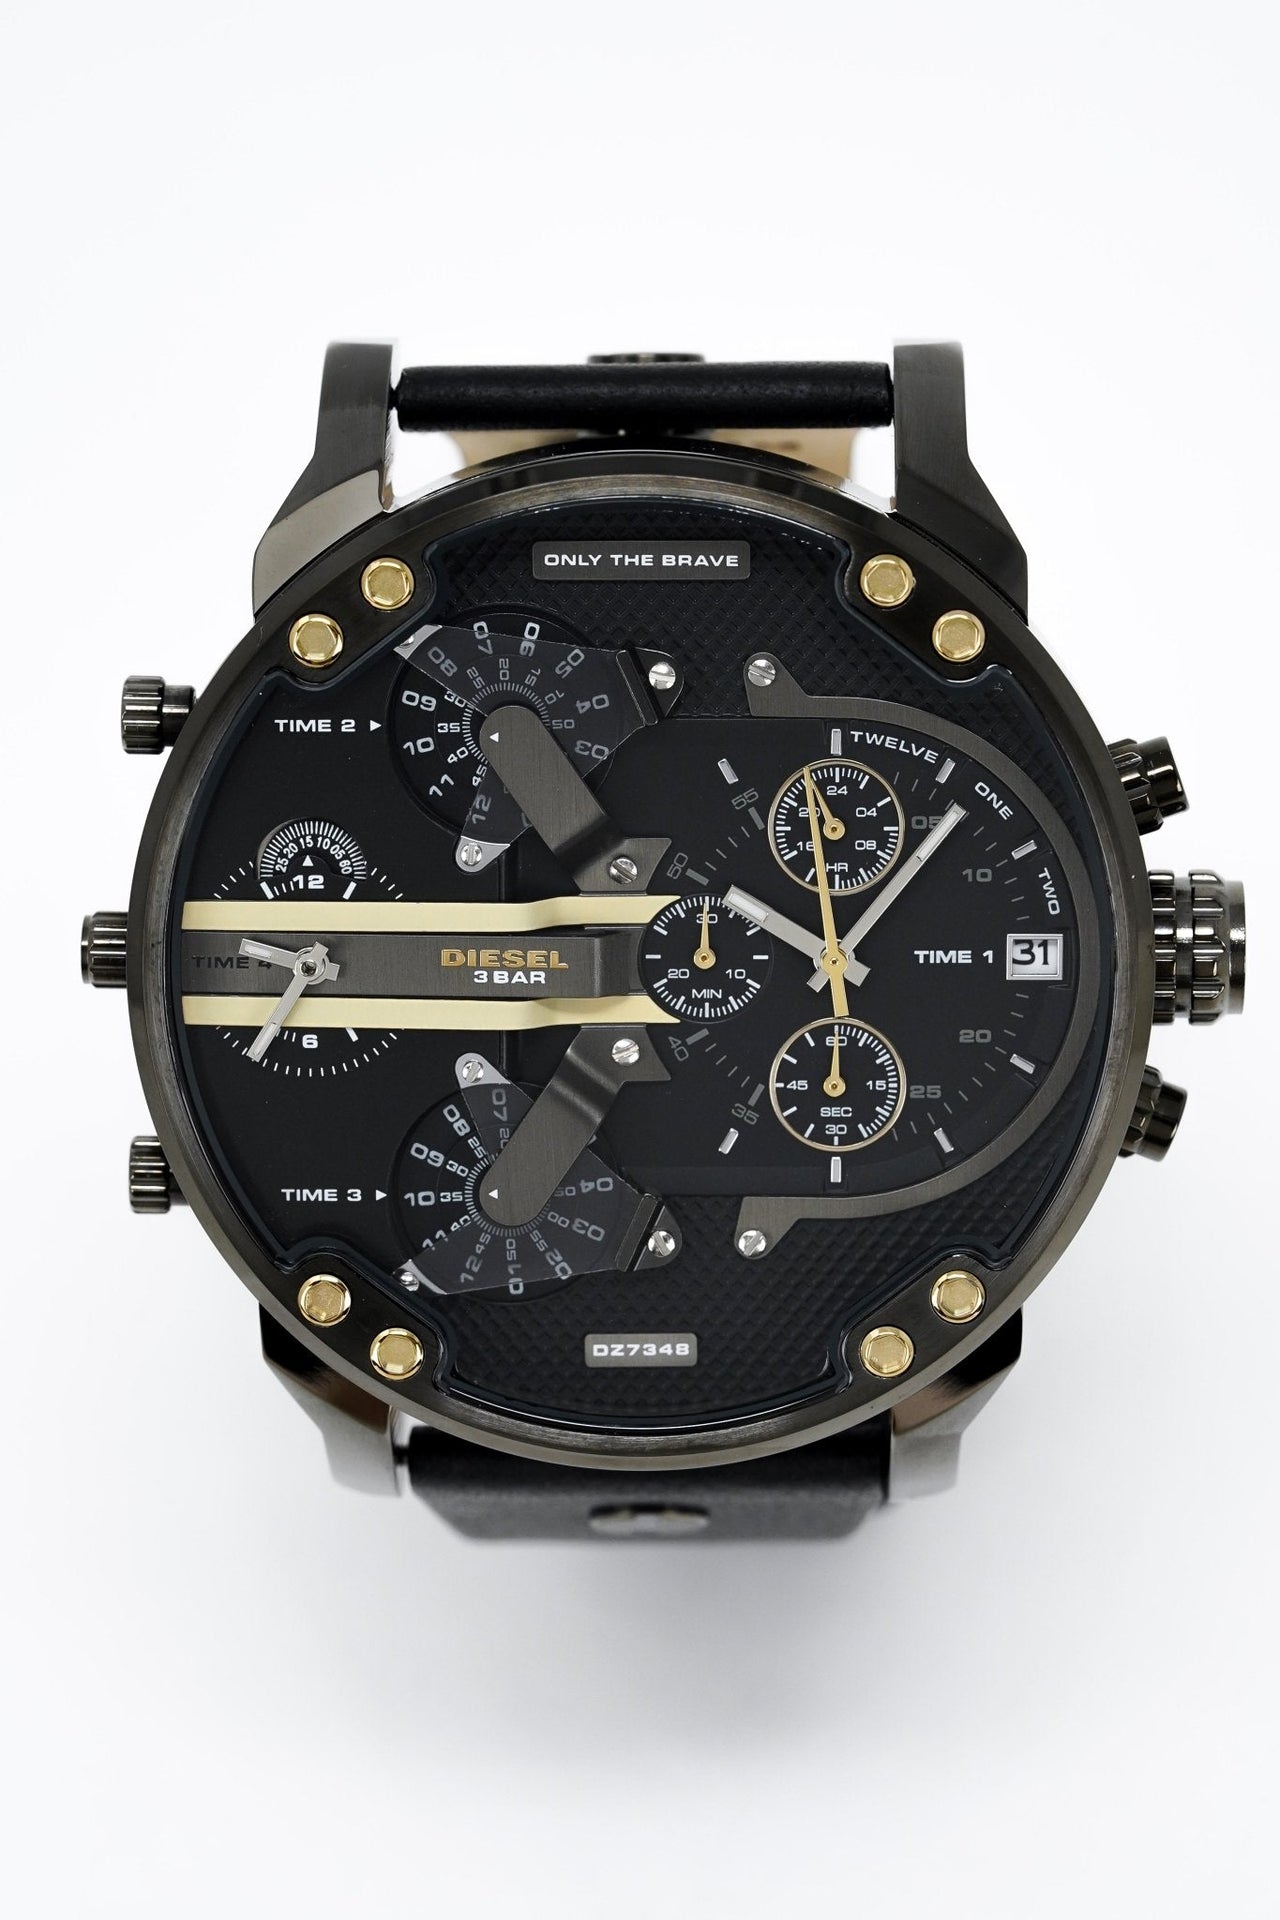 Diesel Men's Chronograph Watch Mr Daddy 2.0 Black Gold DZ7348 - Watches & Crystals